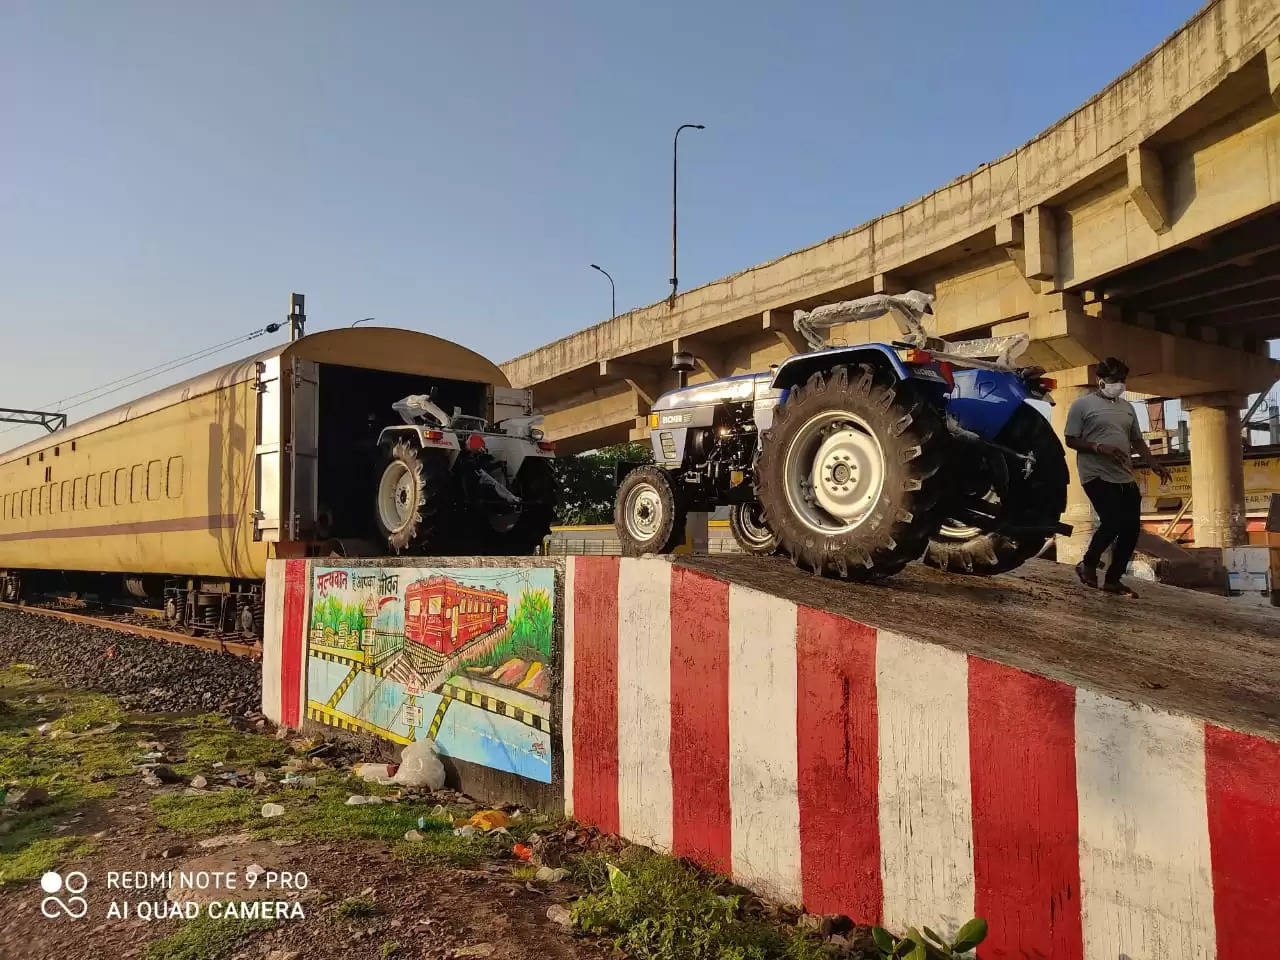 भोपाल: आयशर ट्रेक्टर के परिवहन से बढ़ी रेलवे की कमाई